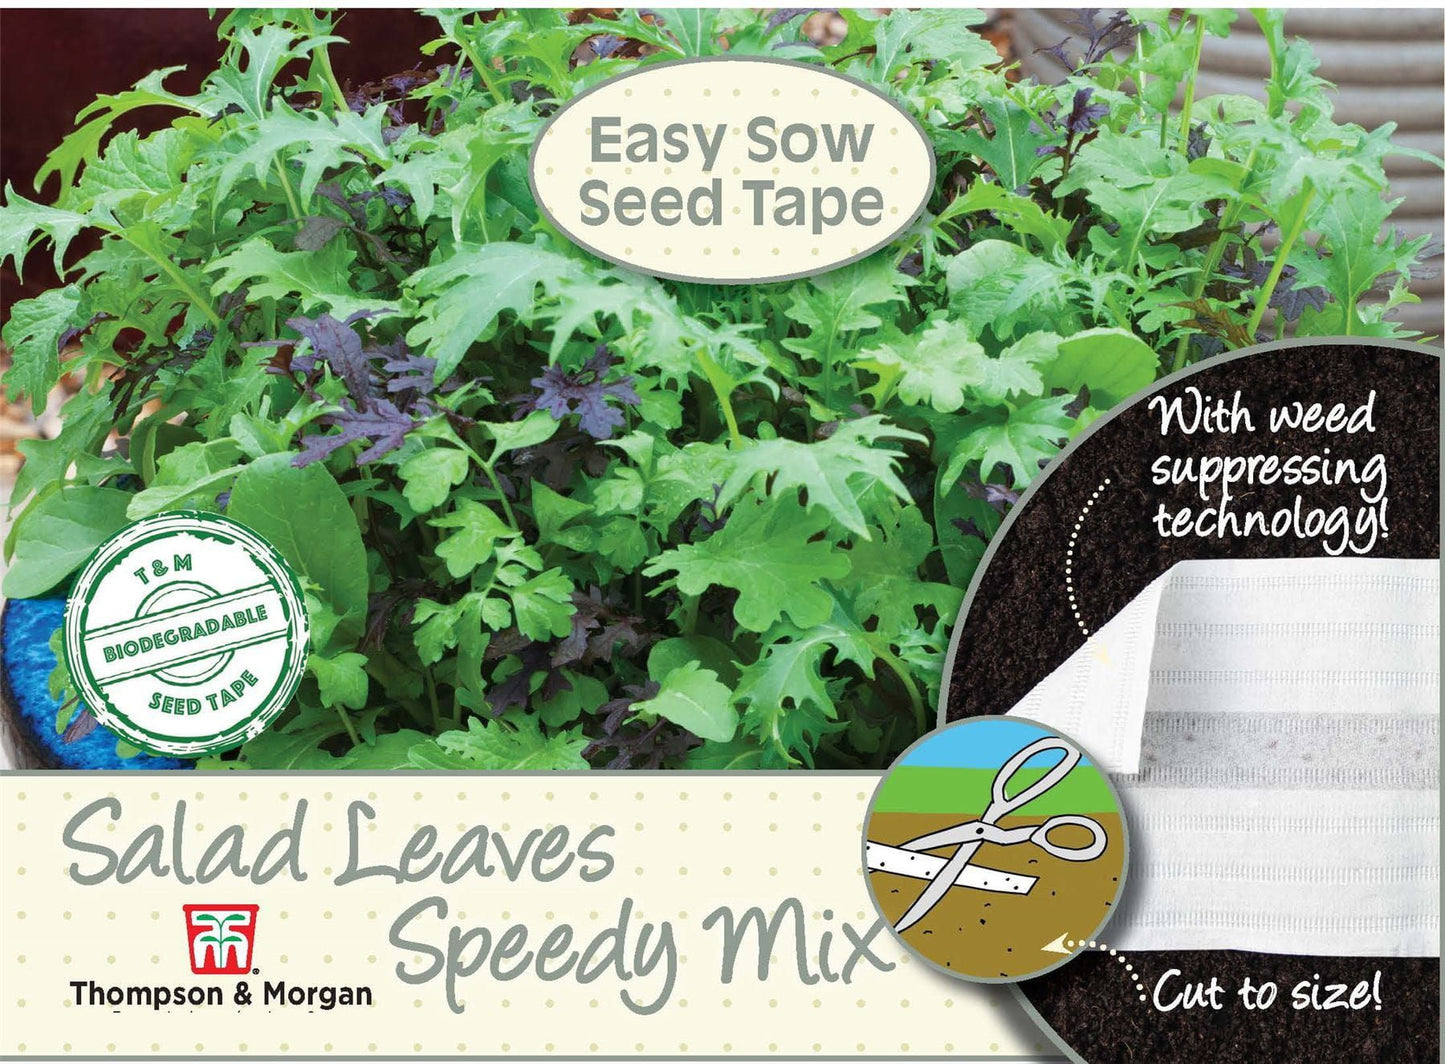 Thompson & Morgan - Vegetable Seed Tape - Salad Leaves - Speedy Mix Seed Tape